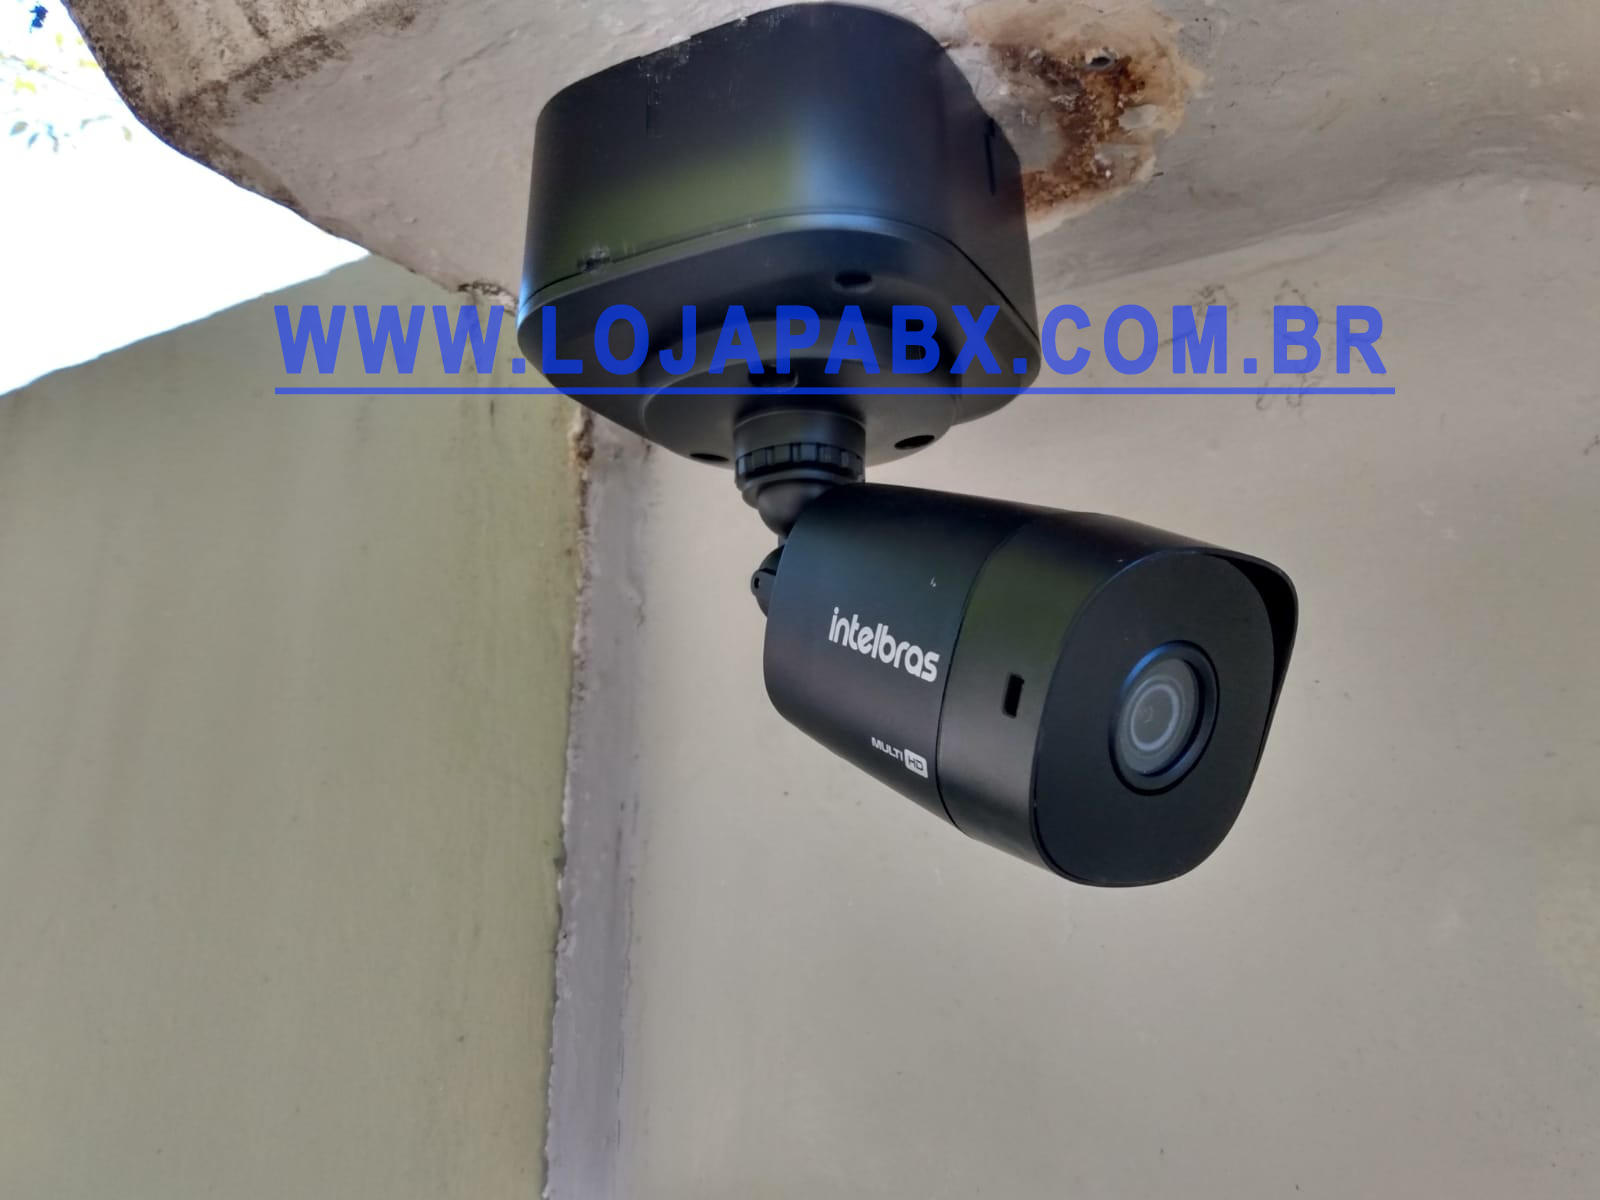 Instalação de Câmeras de Segurança em Guarulhos